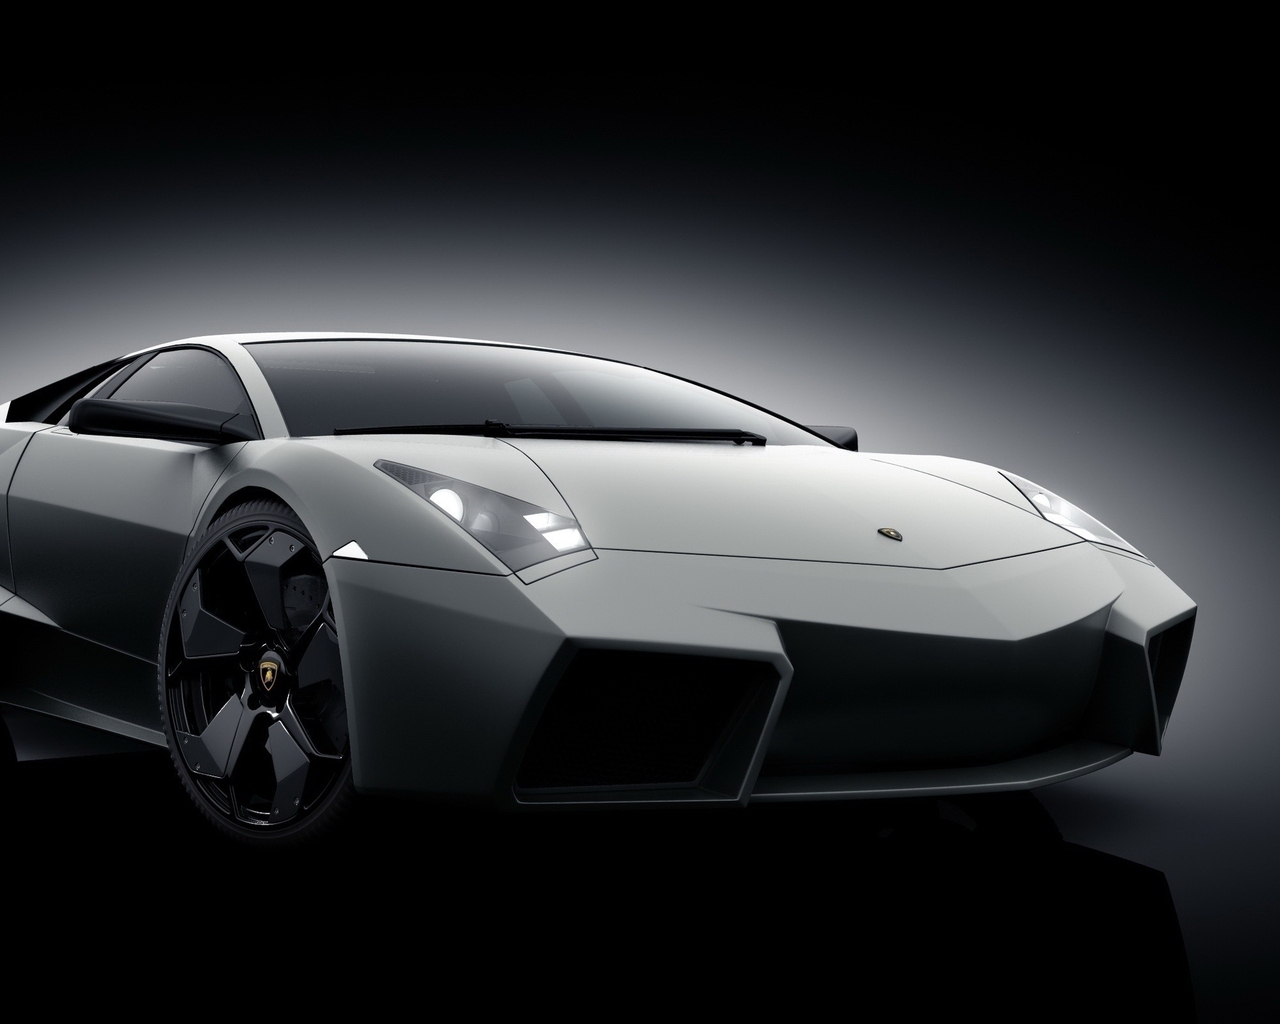 Grey Lamborghini Reventon for 1280 x 1024 resolution